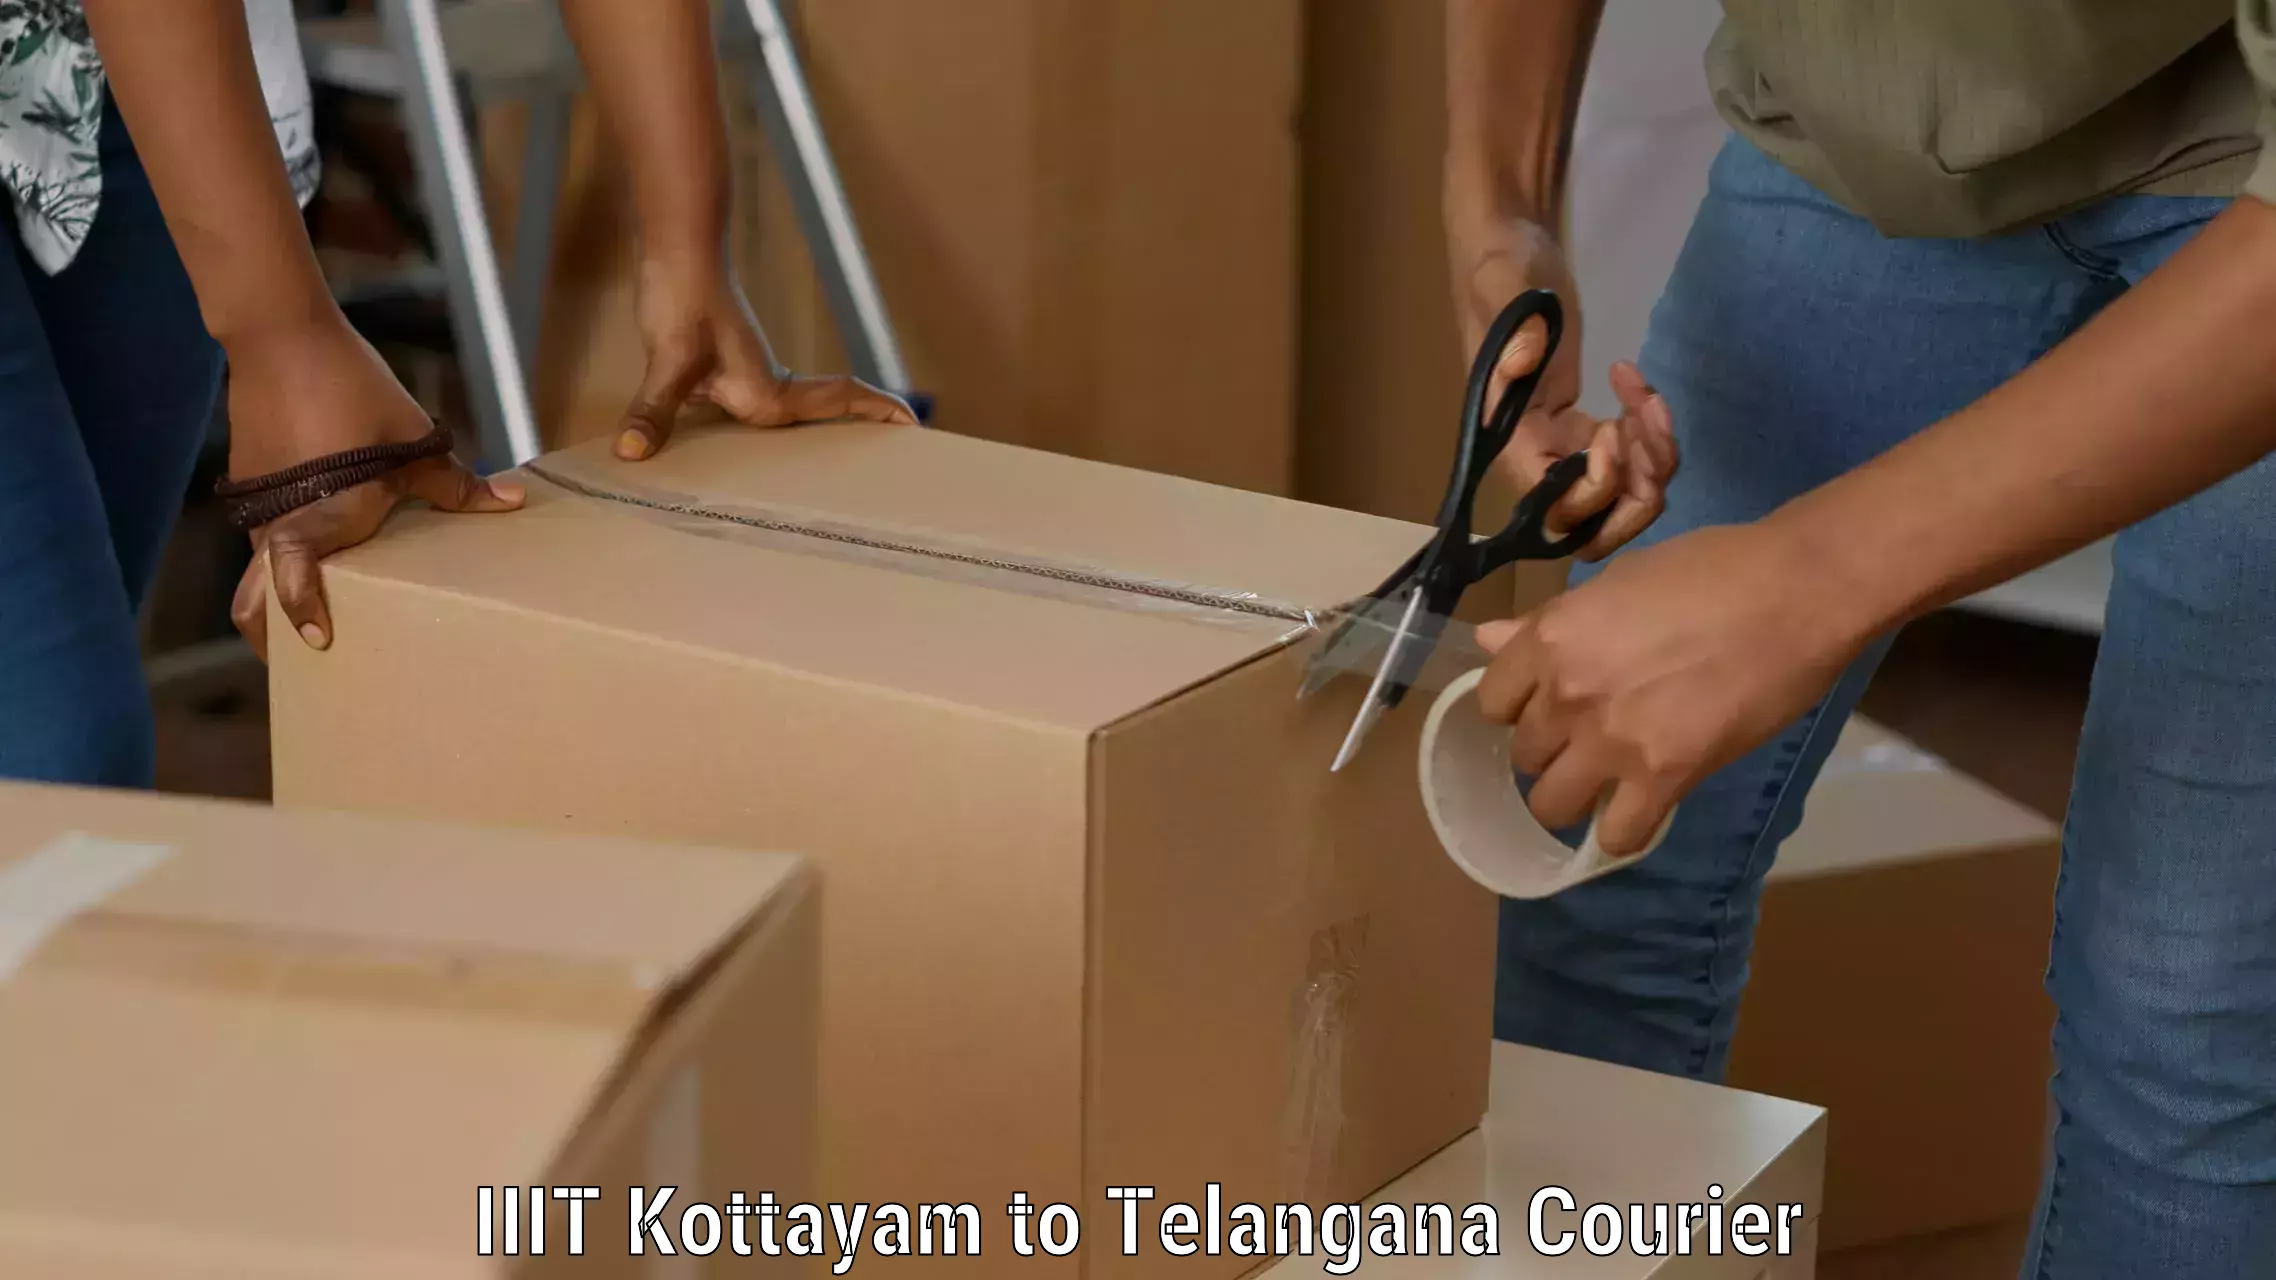 Global delivery options IIIT Kottayam to Danthalapally